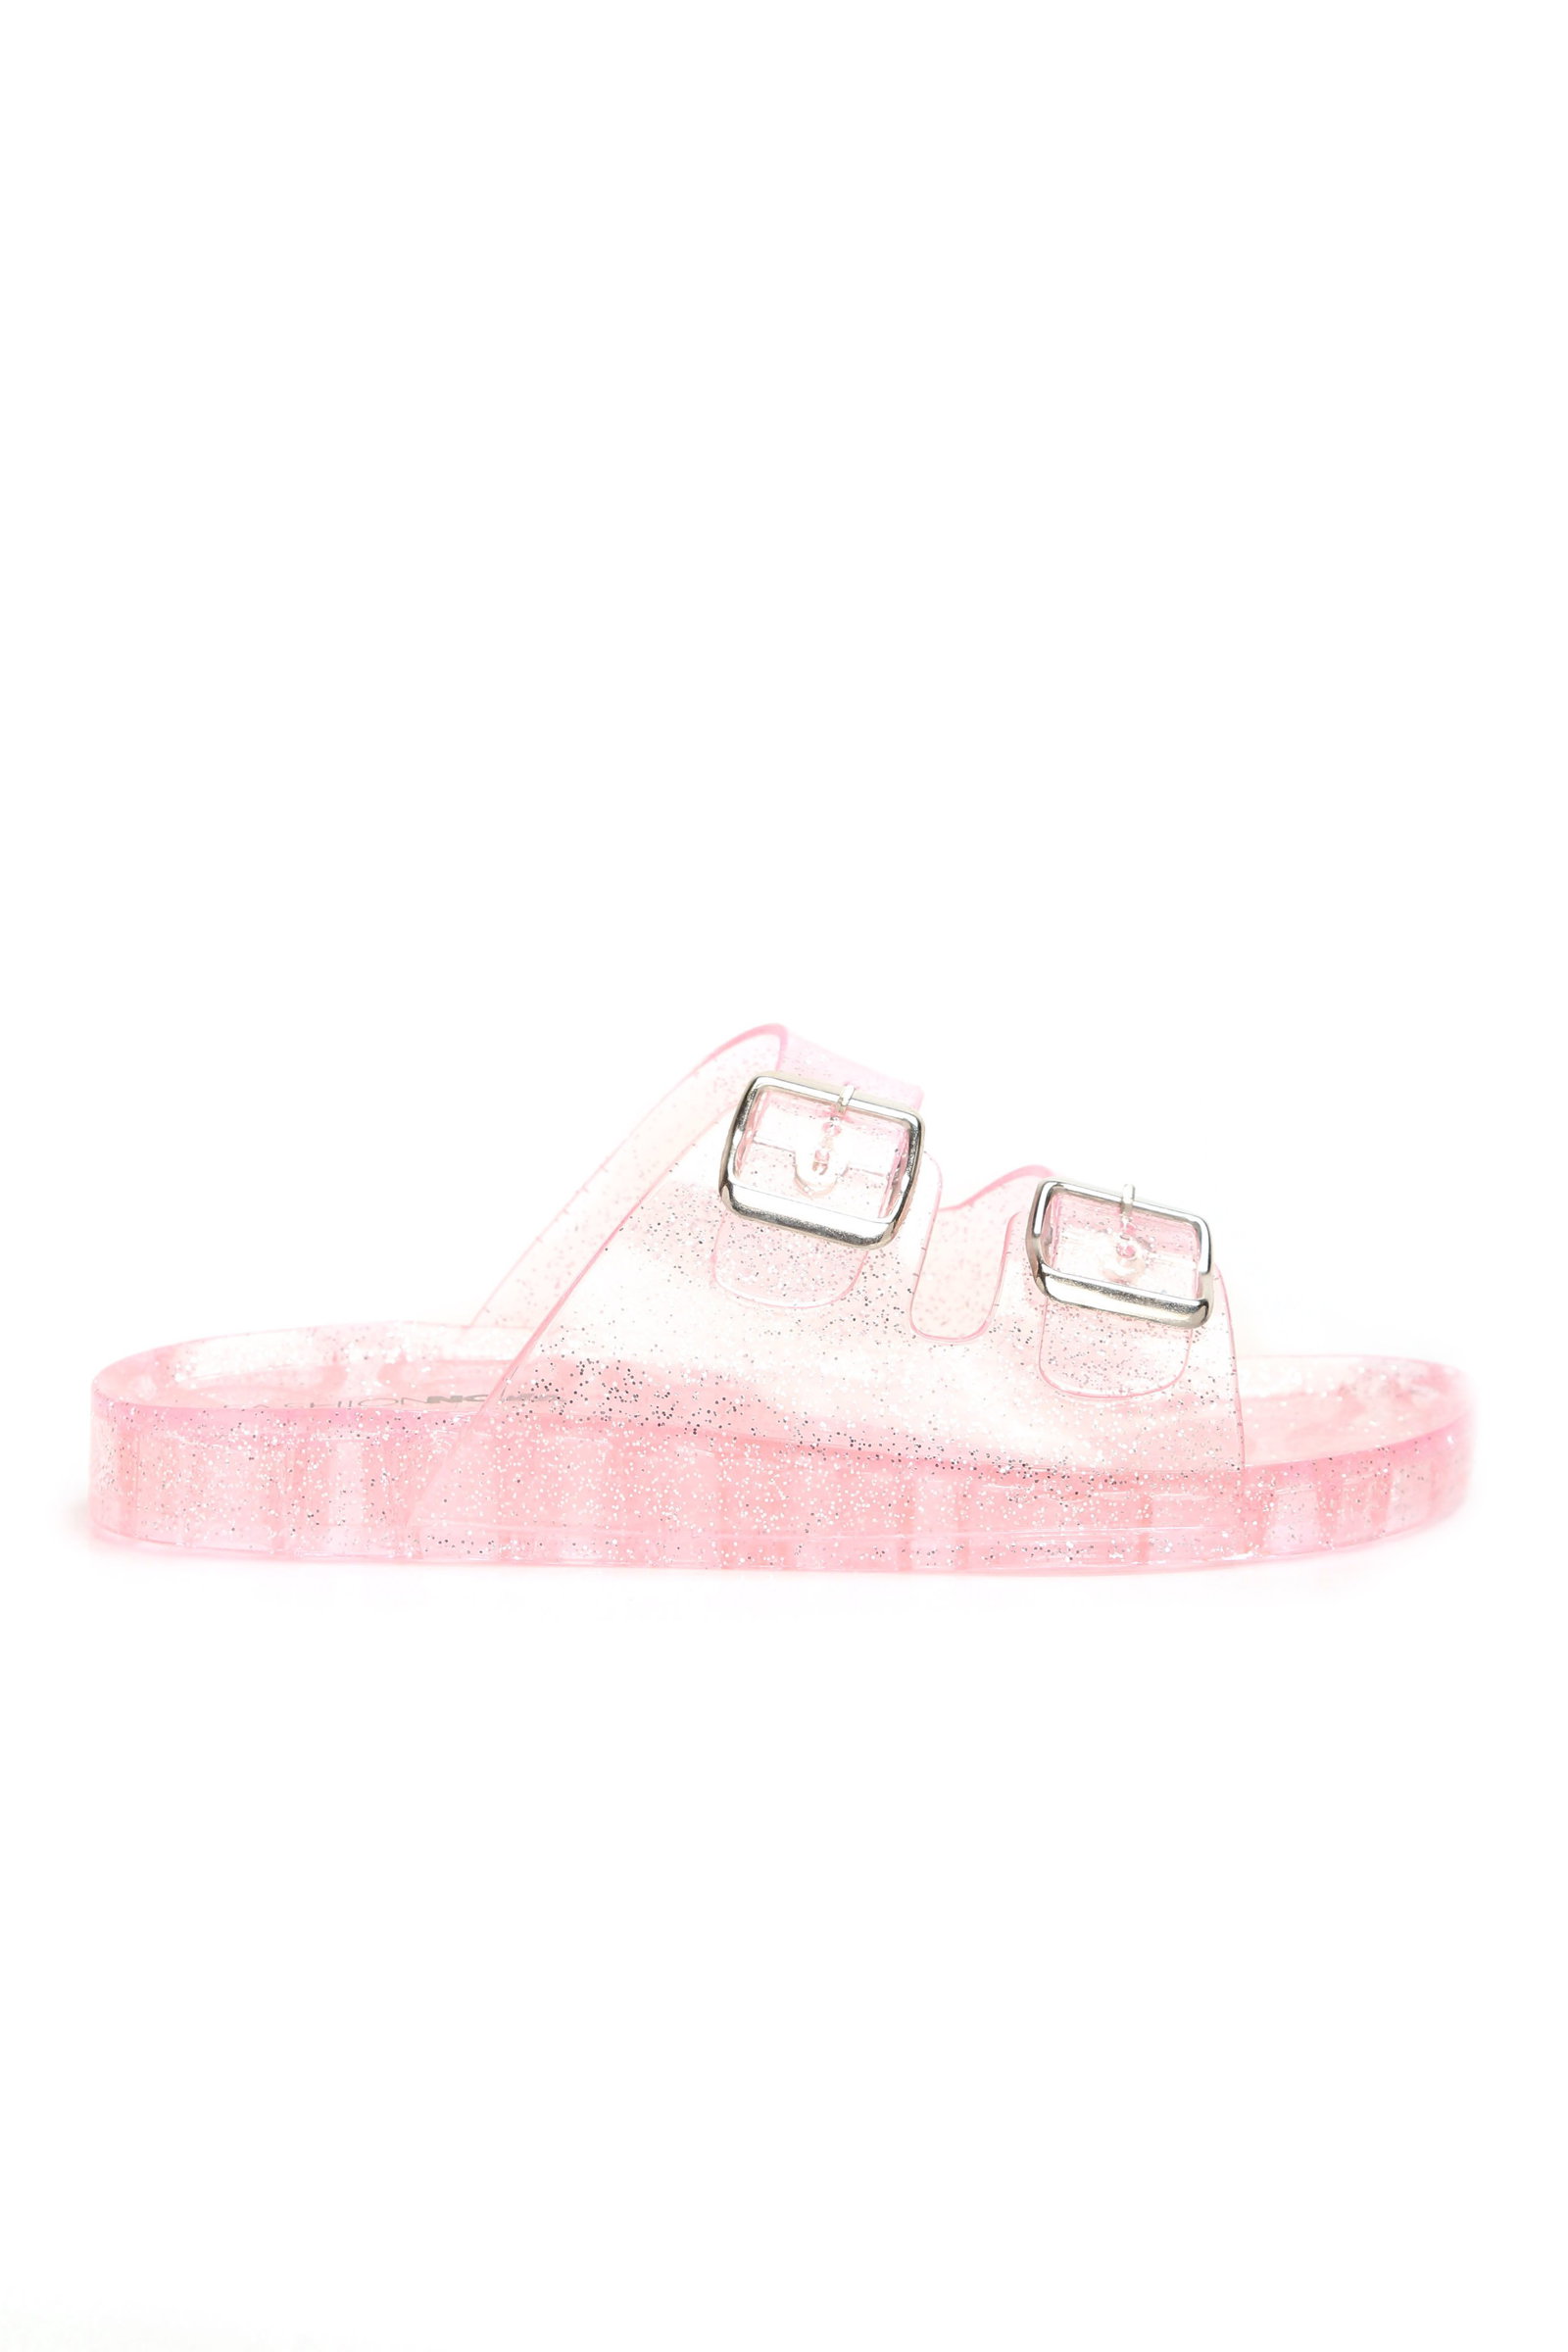 fashion nova jelly sandals